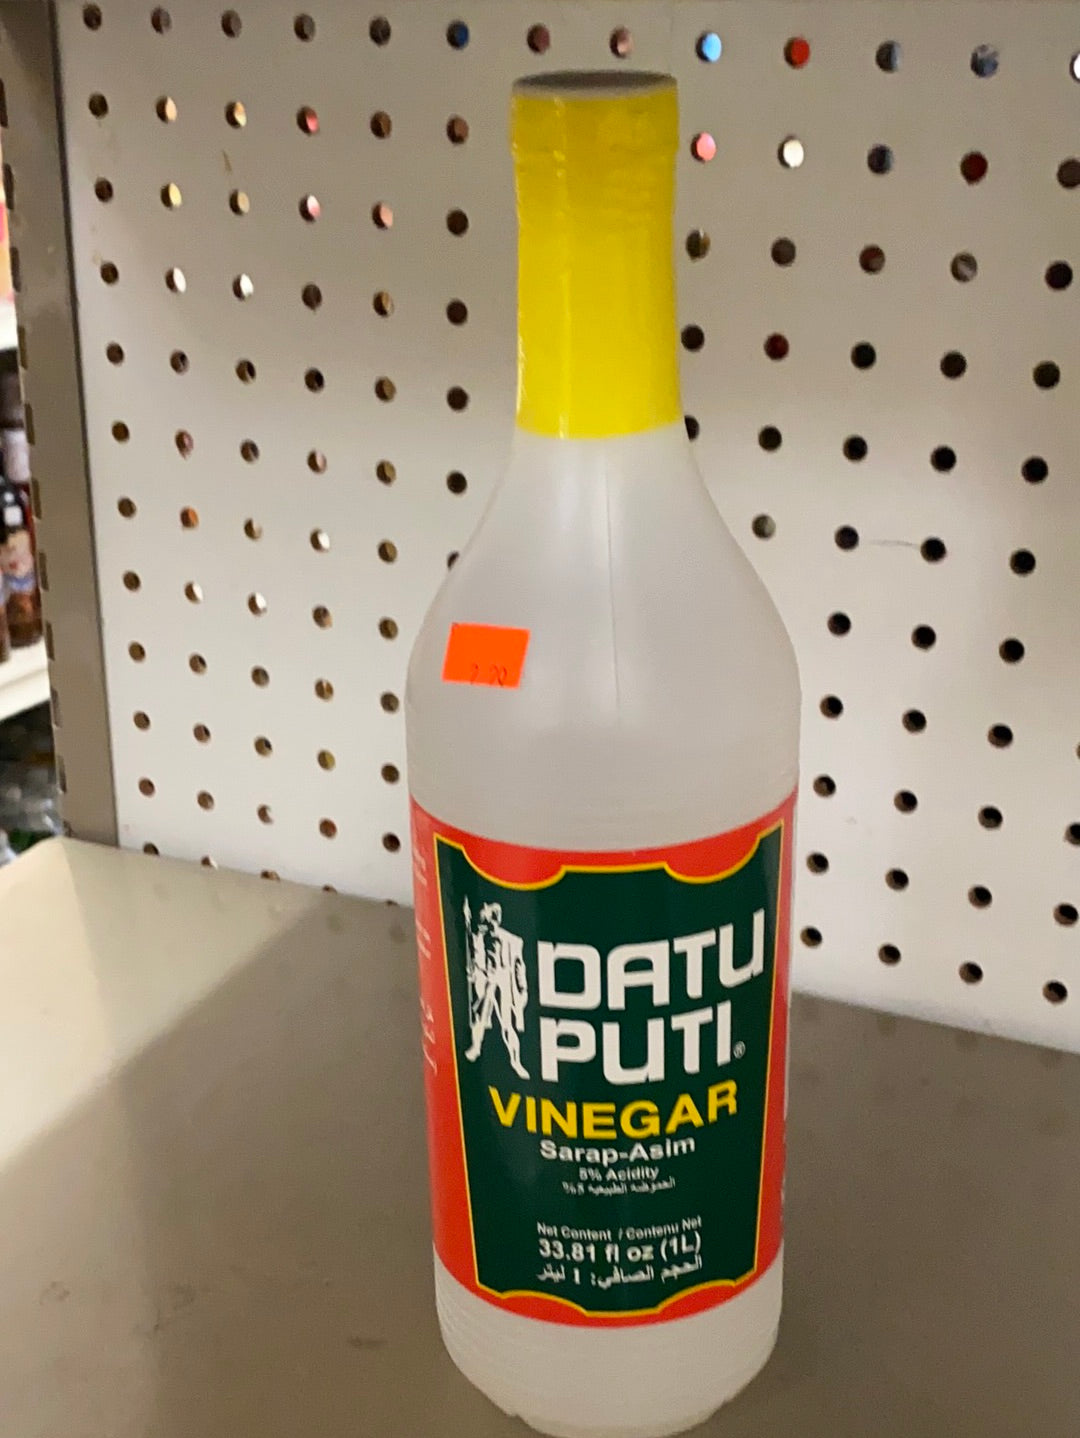 Datu Puti Vinegar - 33.81 fl oz (1L)